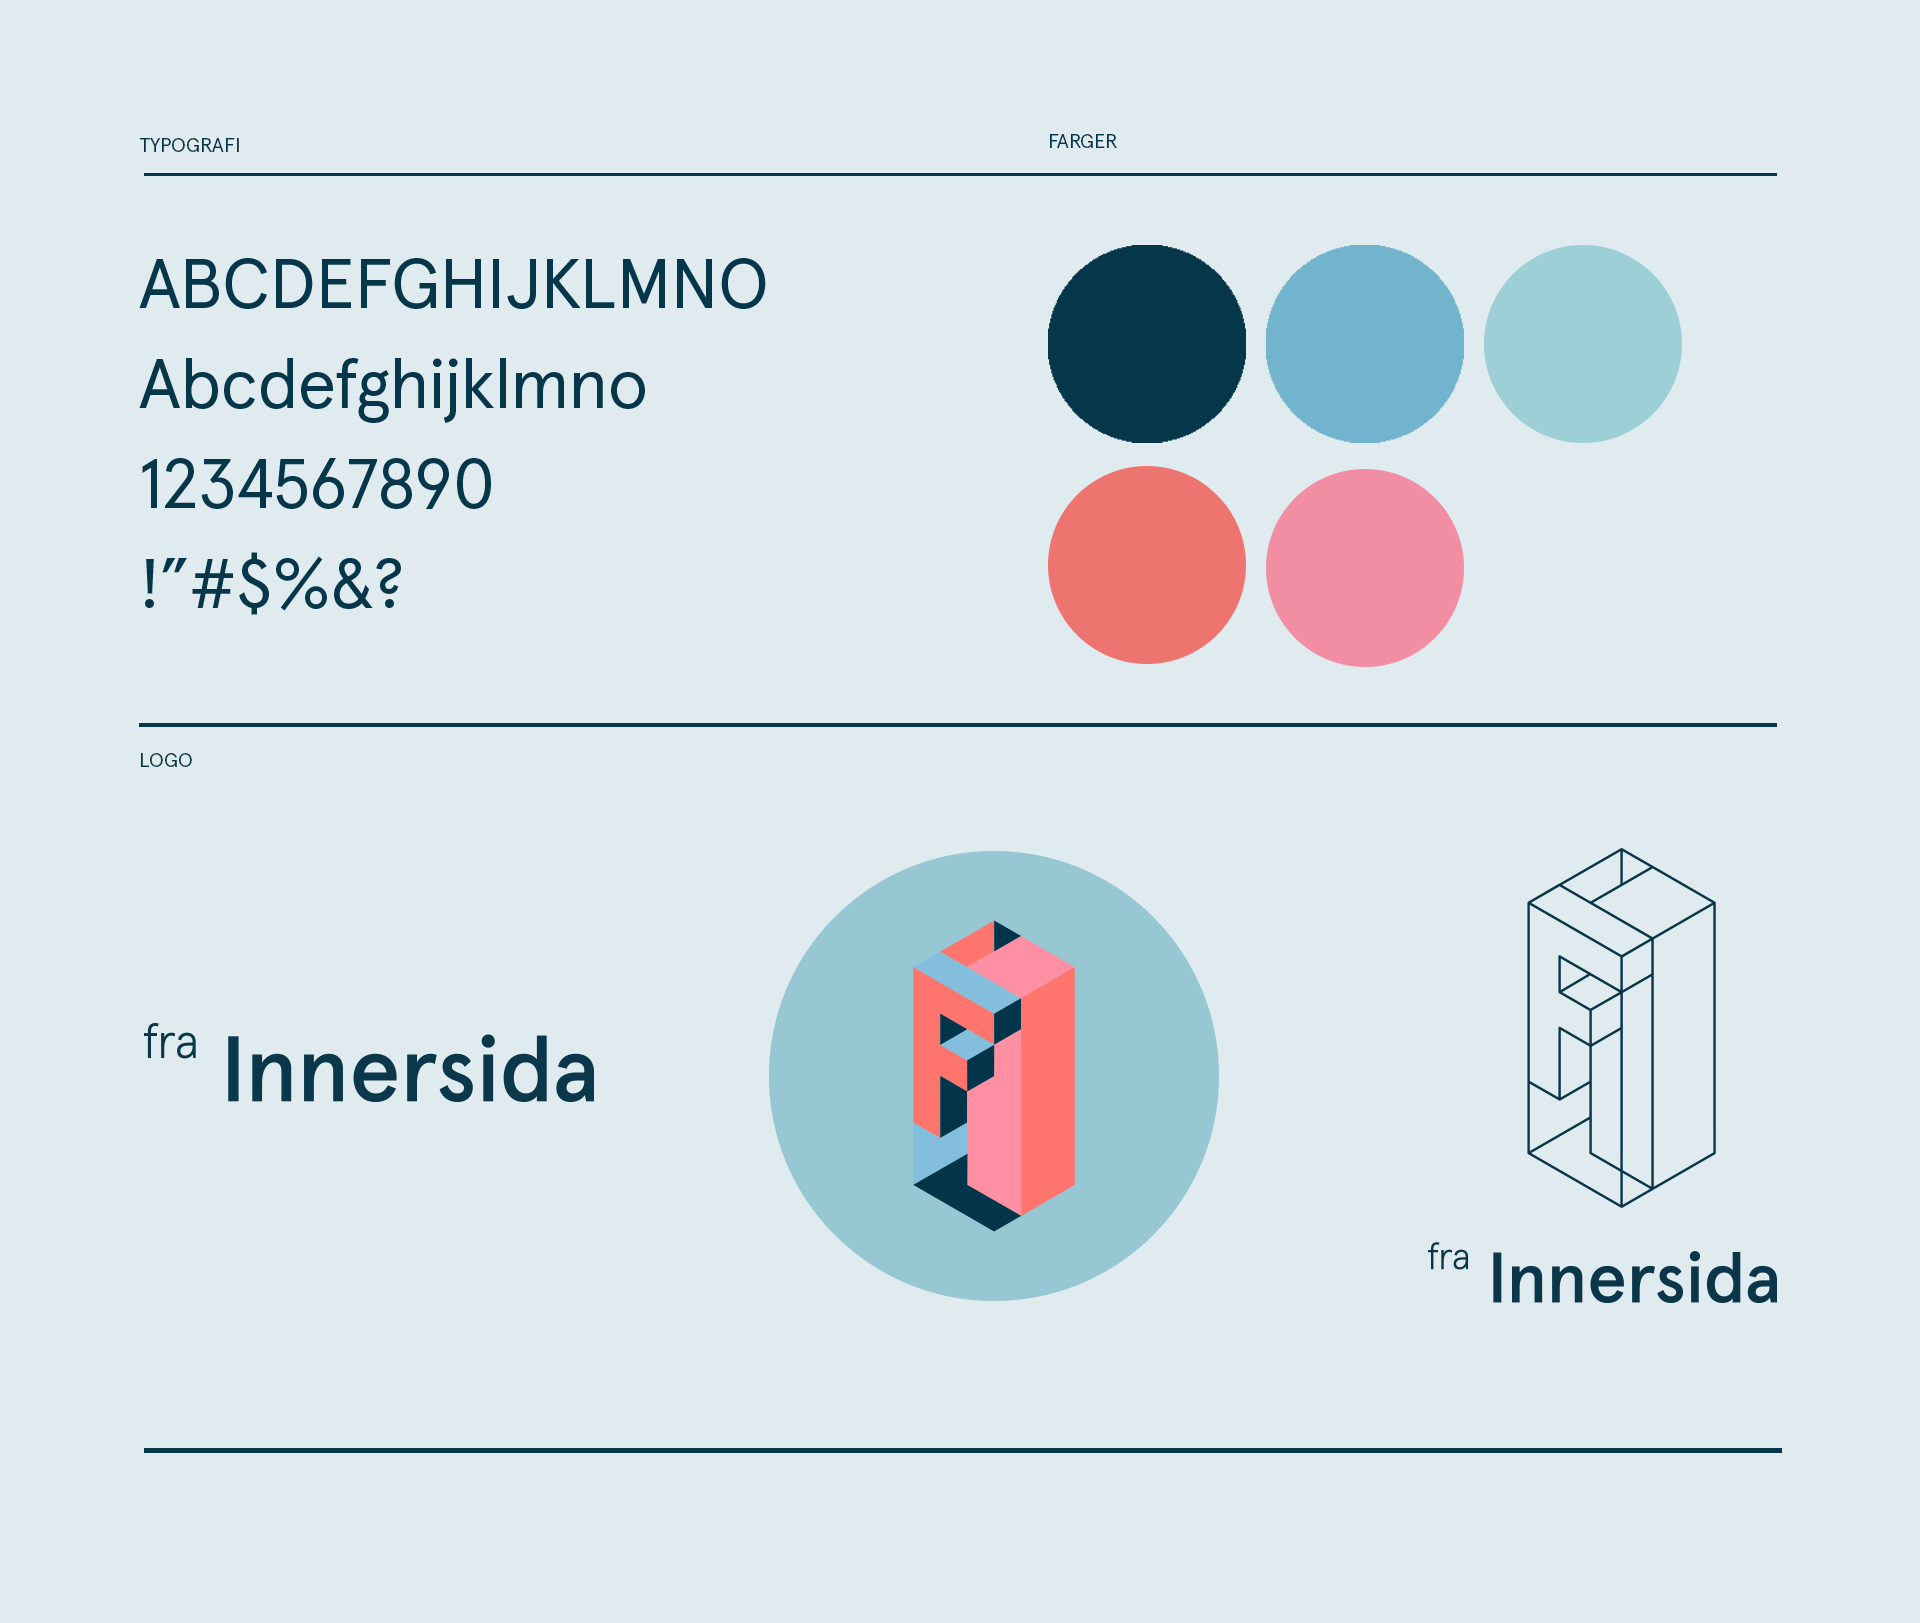 fra Innersida Visuell identitet logo, fareger og typografi